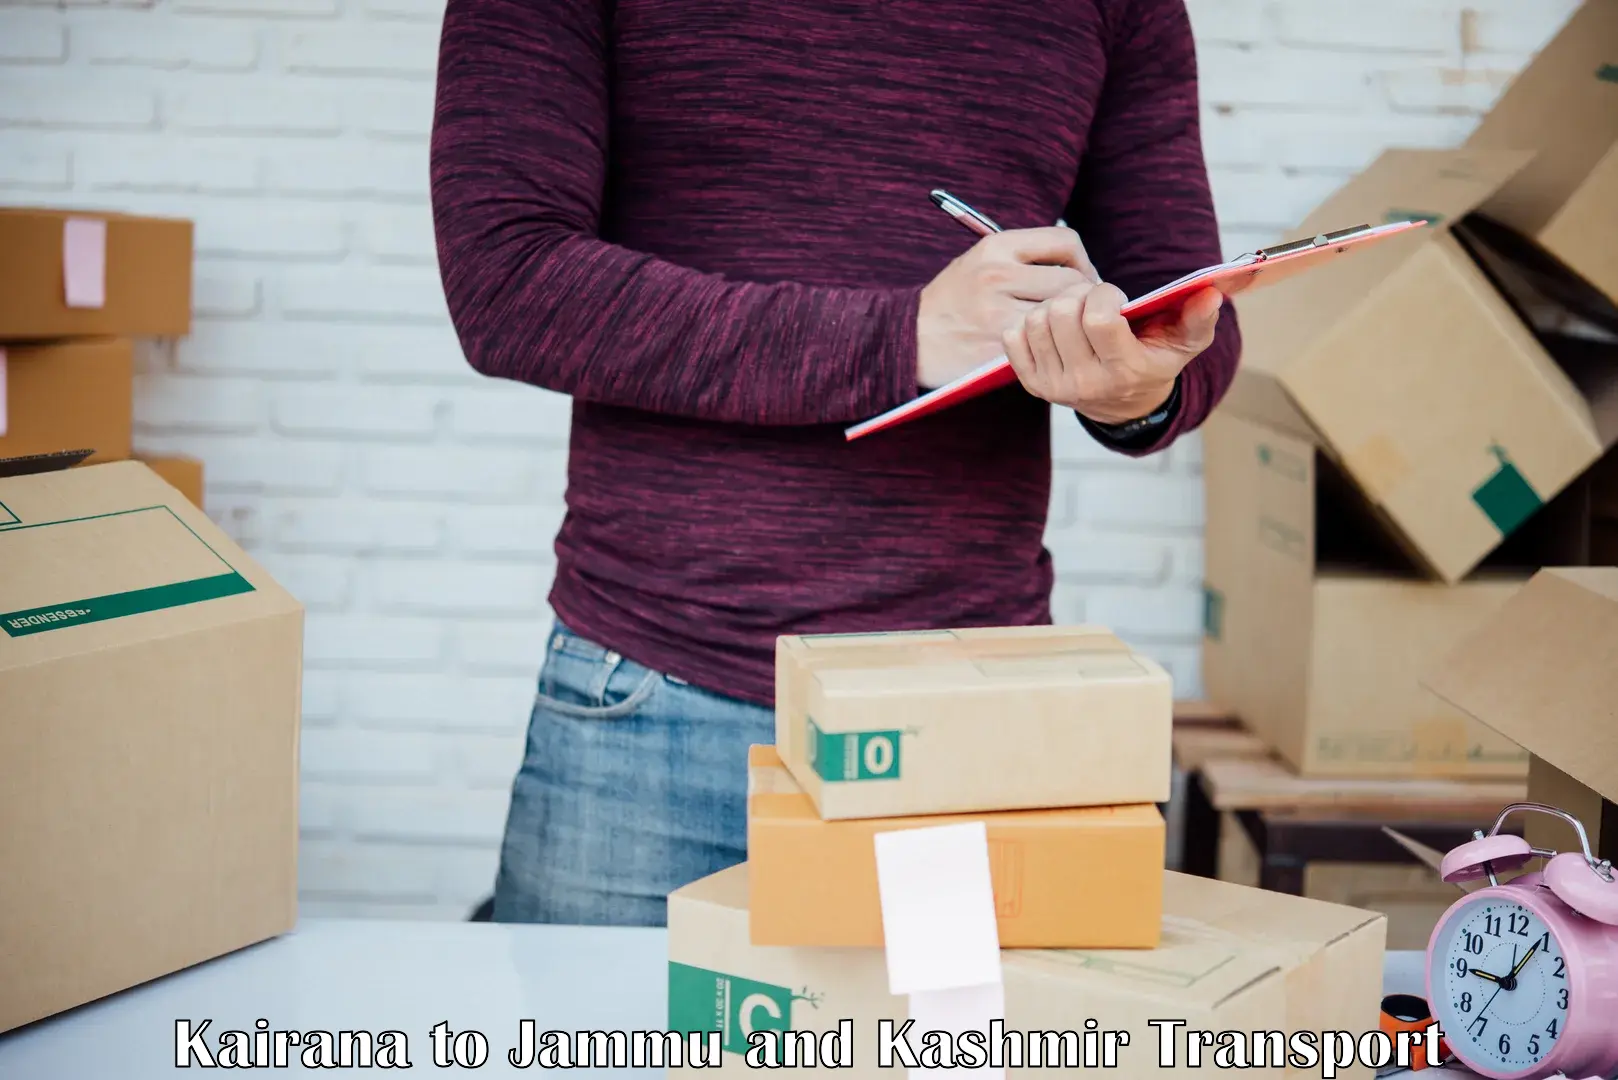 Daily parcel service transport Kairana to University of Jammu